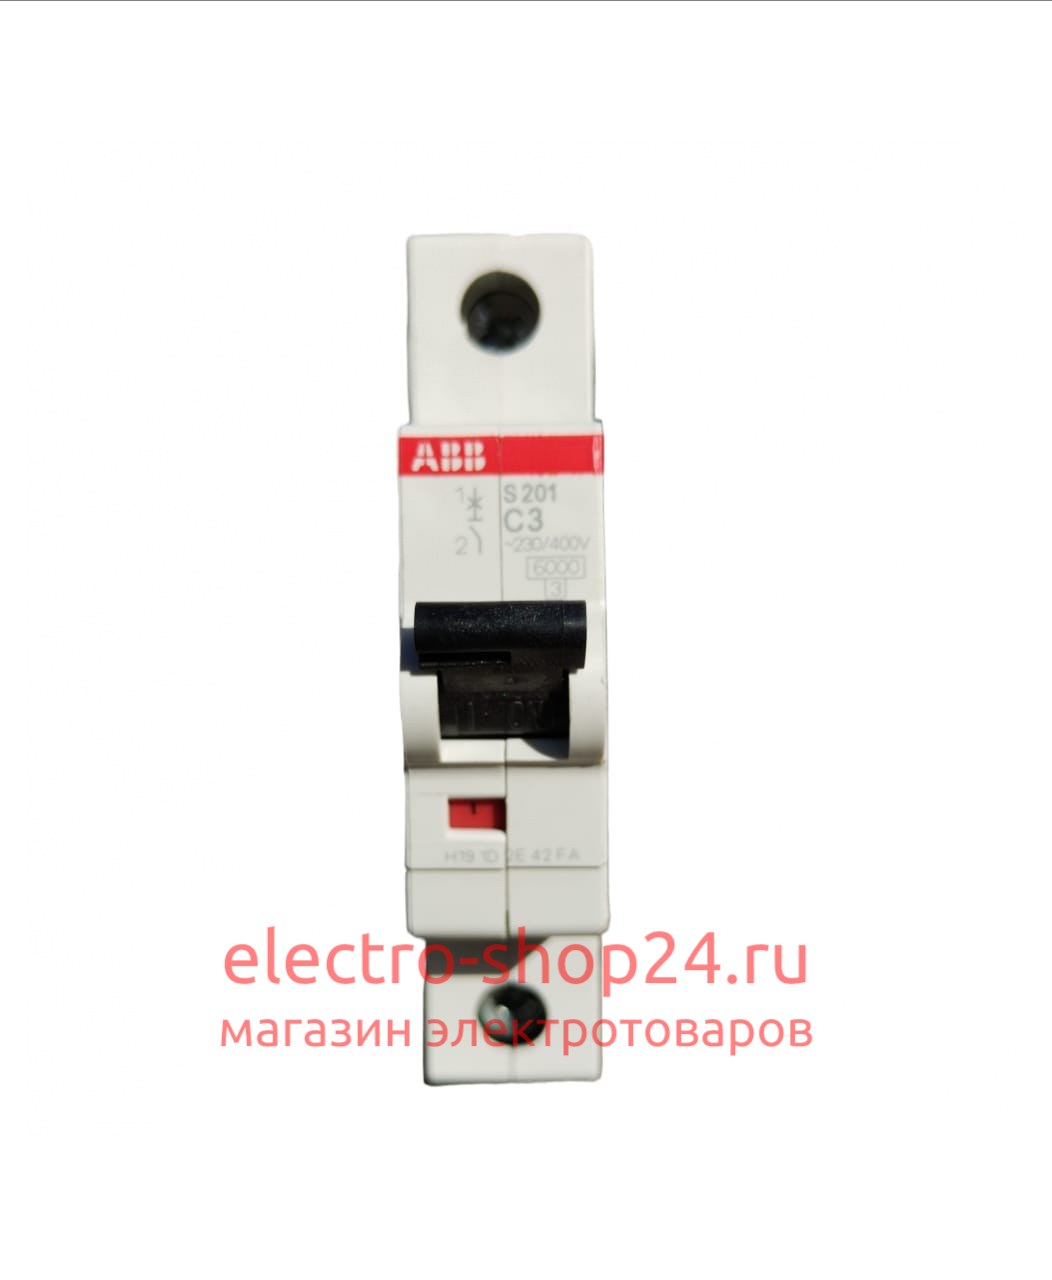 S201 C3 Автоматический выключатель 1-полюсный 3А 6кА (хар-ка C) ABB 2CDS251001R0034 2CDS251001R0034 - магазин электротехники Electroshop